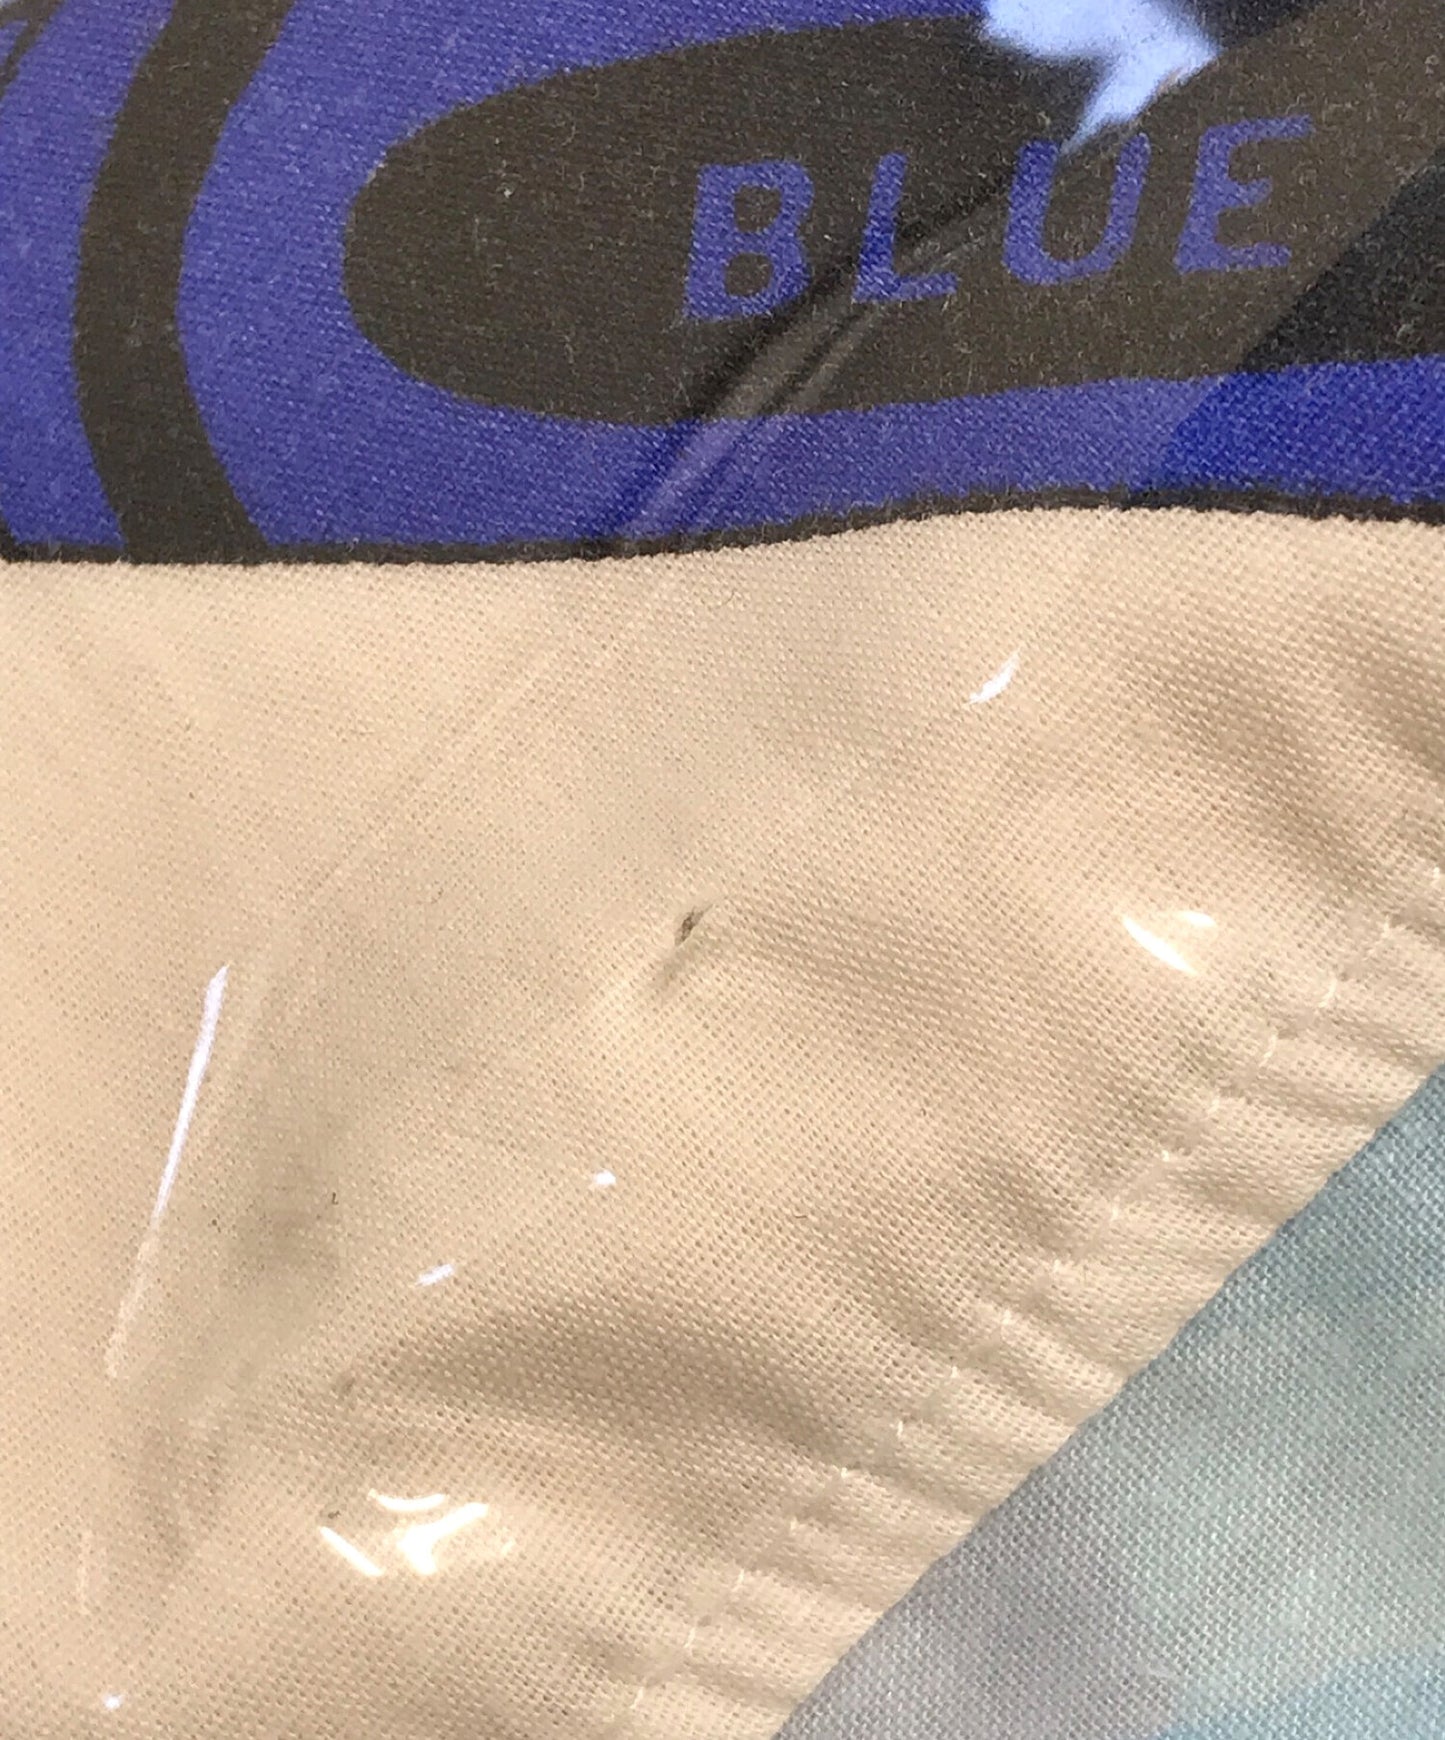 Comme des Garcons เสื้อ PVC Clear Tote Bag W26611